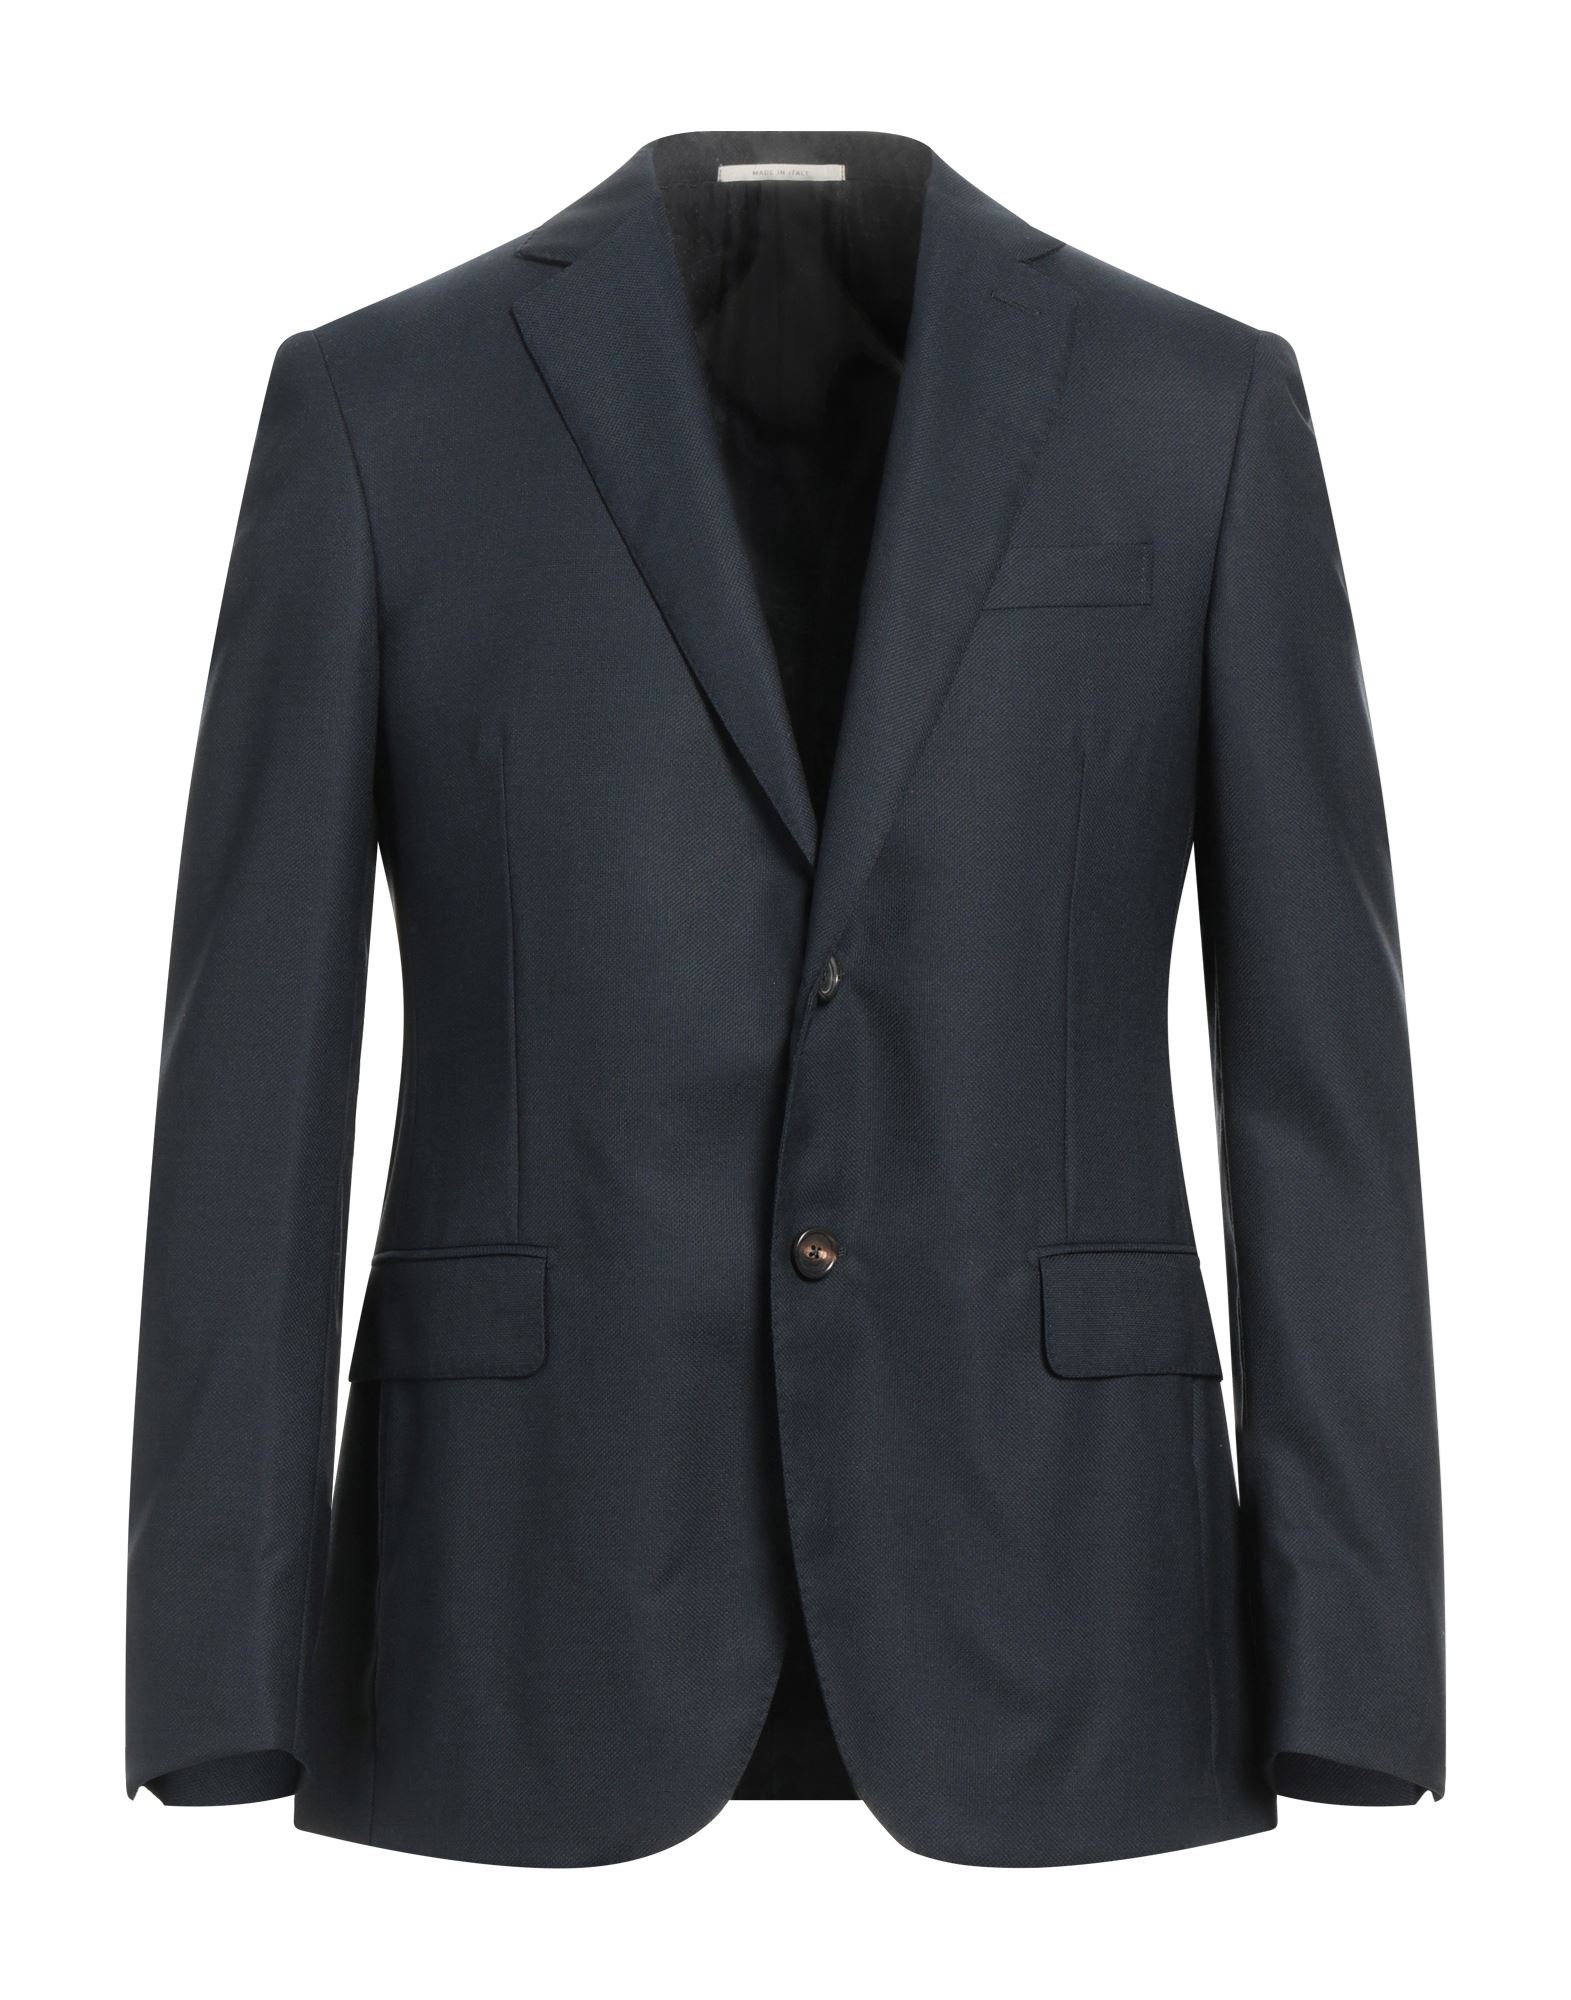 PAL ZILERI Suit jackets | Smart Closet